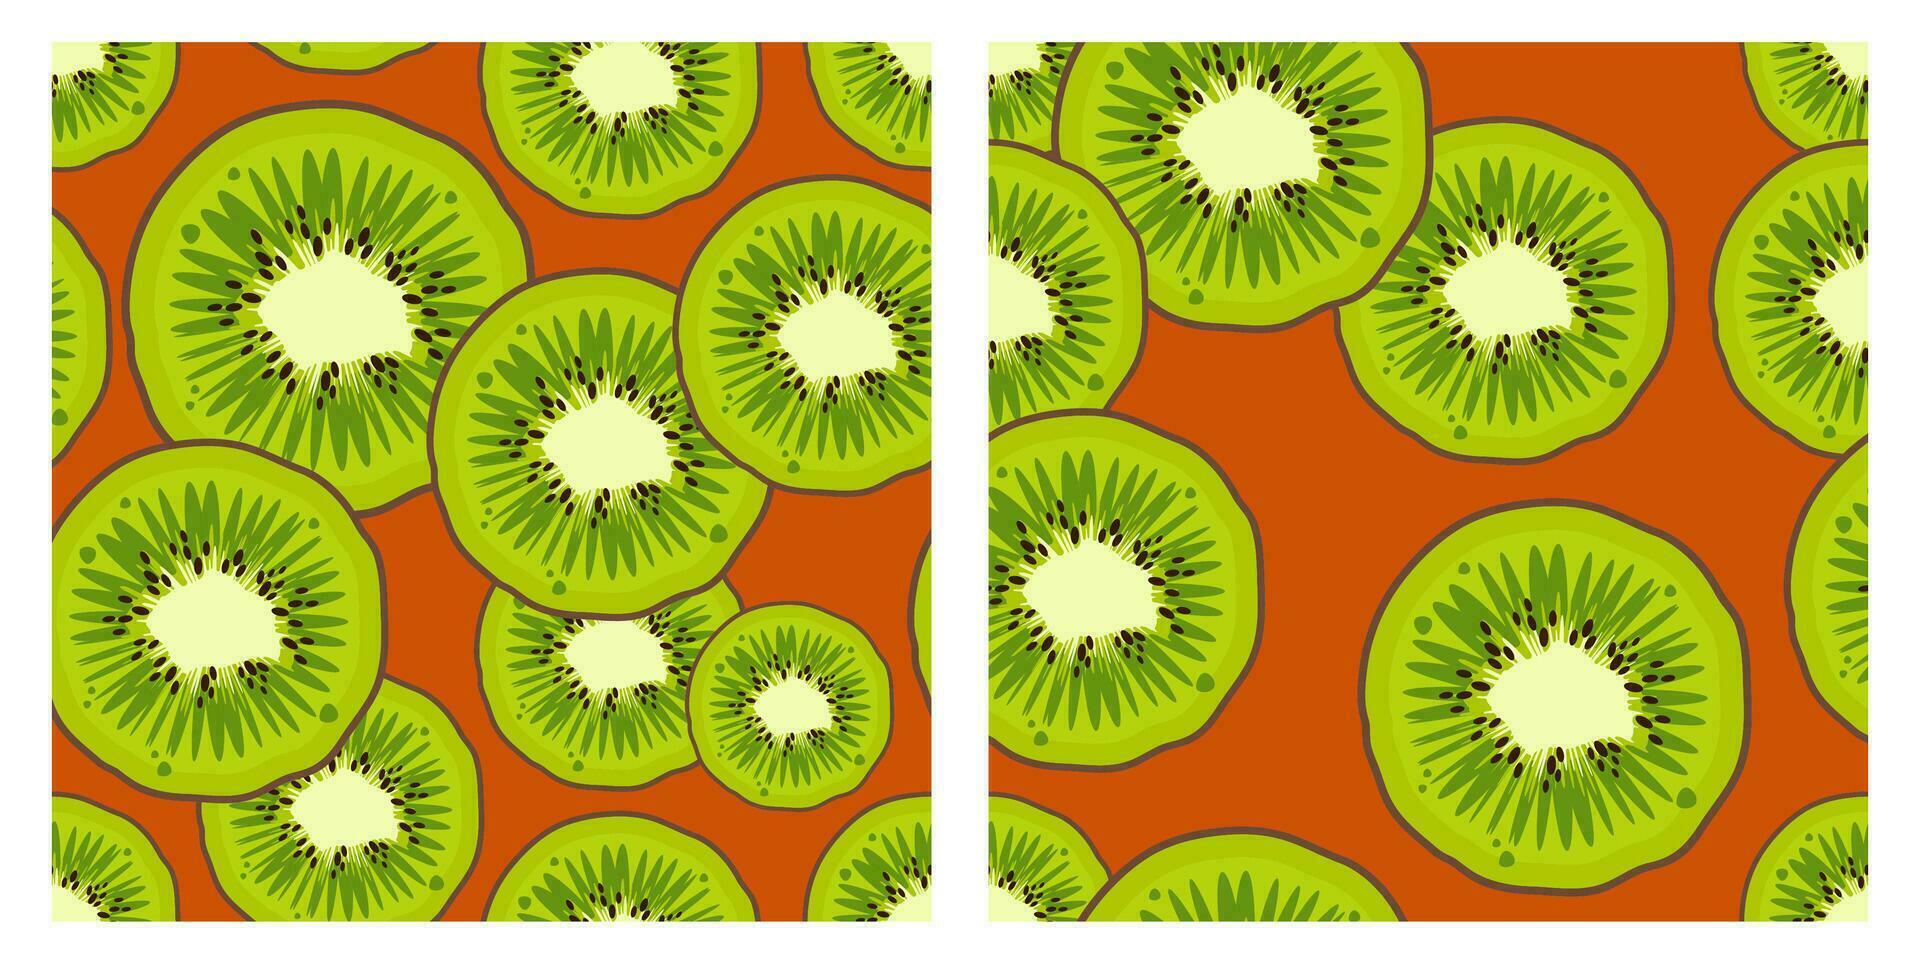 uppsättning av kiwi frukt mönster.trendigt ljus design exotisk frukt på orange bakgrund. färsk saftig grön frukter. vektor illustration för tapeter, textil, webb, app, anteckningsböcker, fall, omslag papper